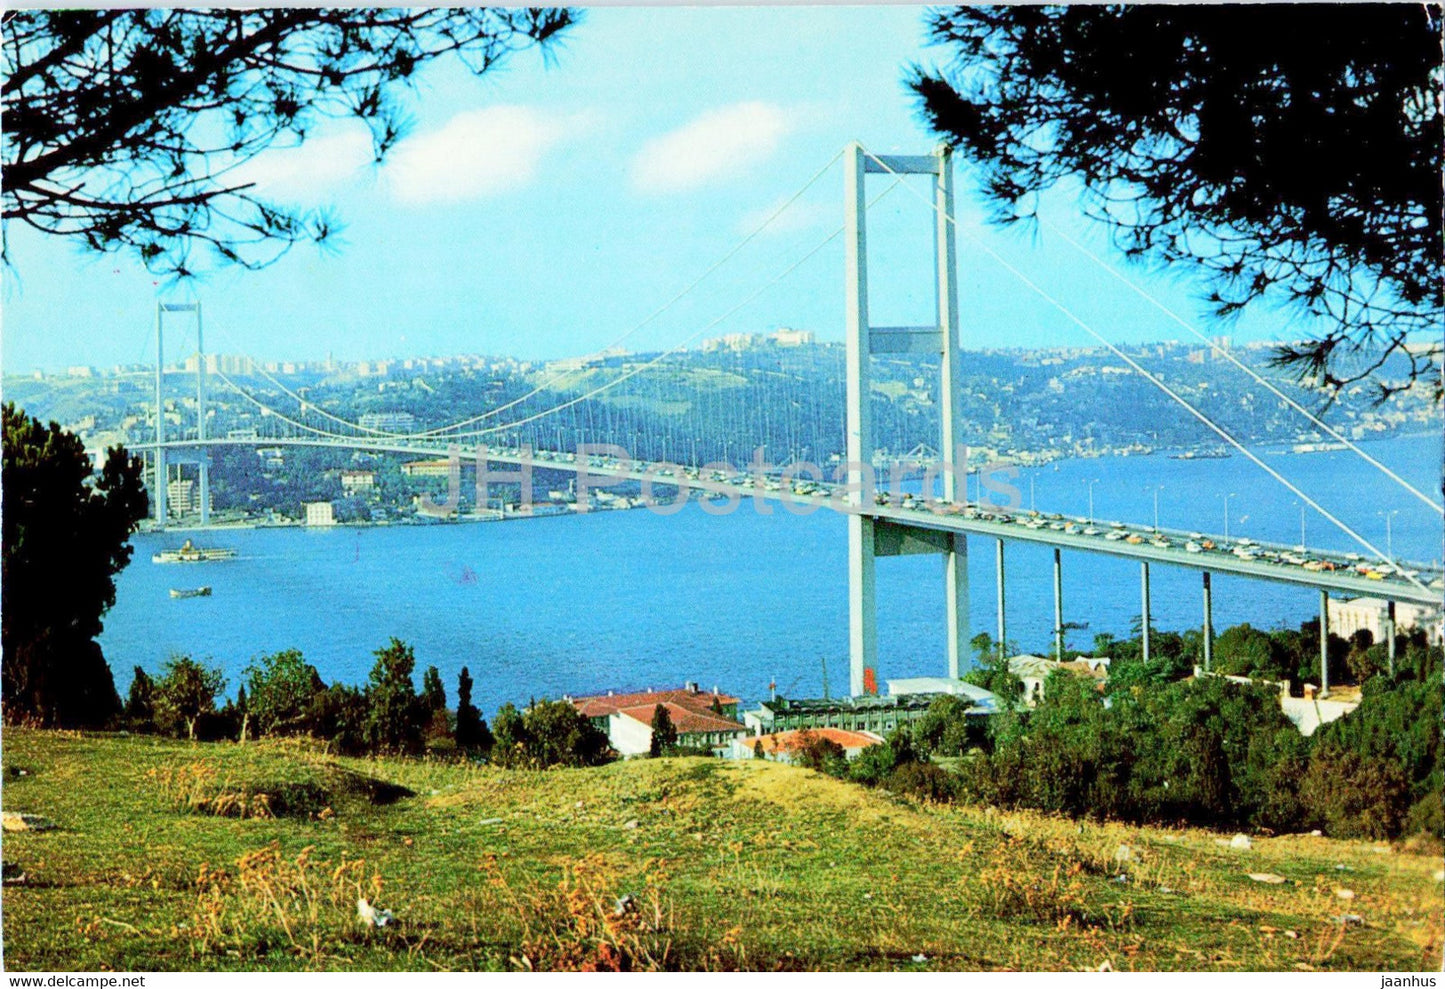 Istanbul - The view of Bosphorus Bridge from Beylerbey village - 264 - Keskin Color - Turkey - unused - JH Postcards